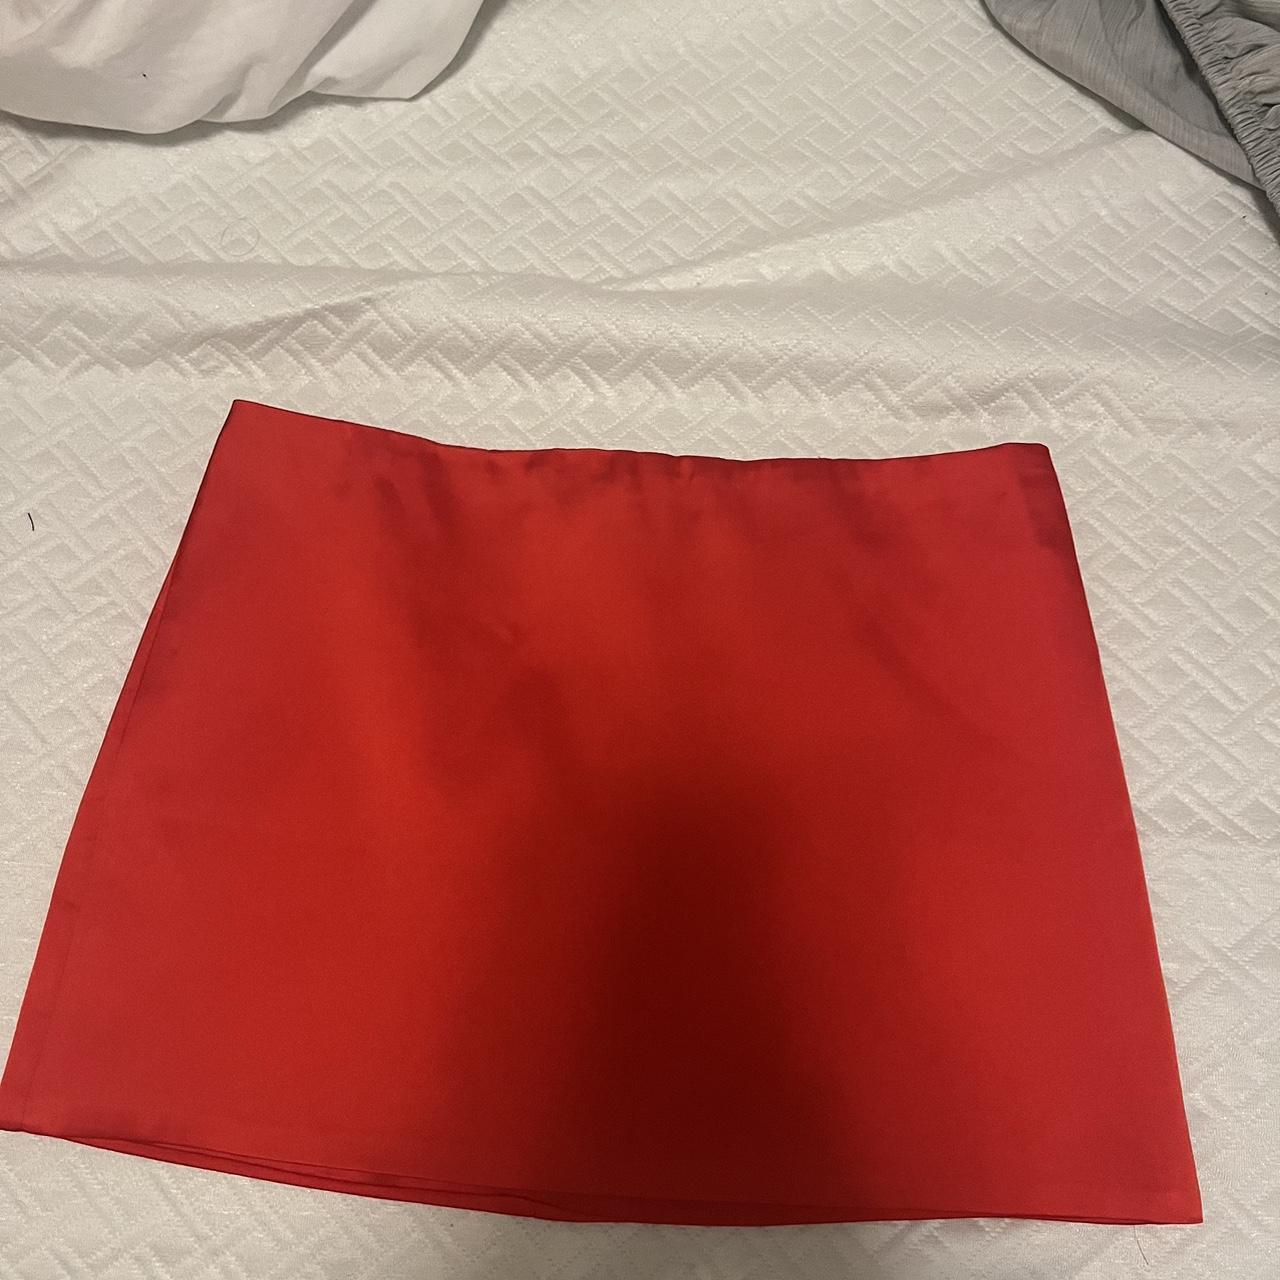 Edikted Red Satin mini skirt -bought online never... - Depop